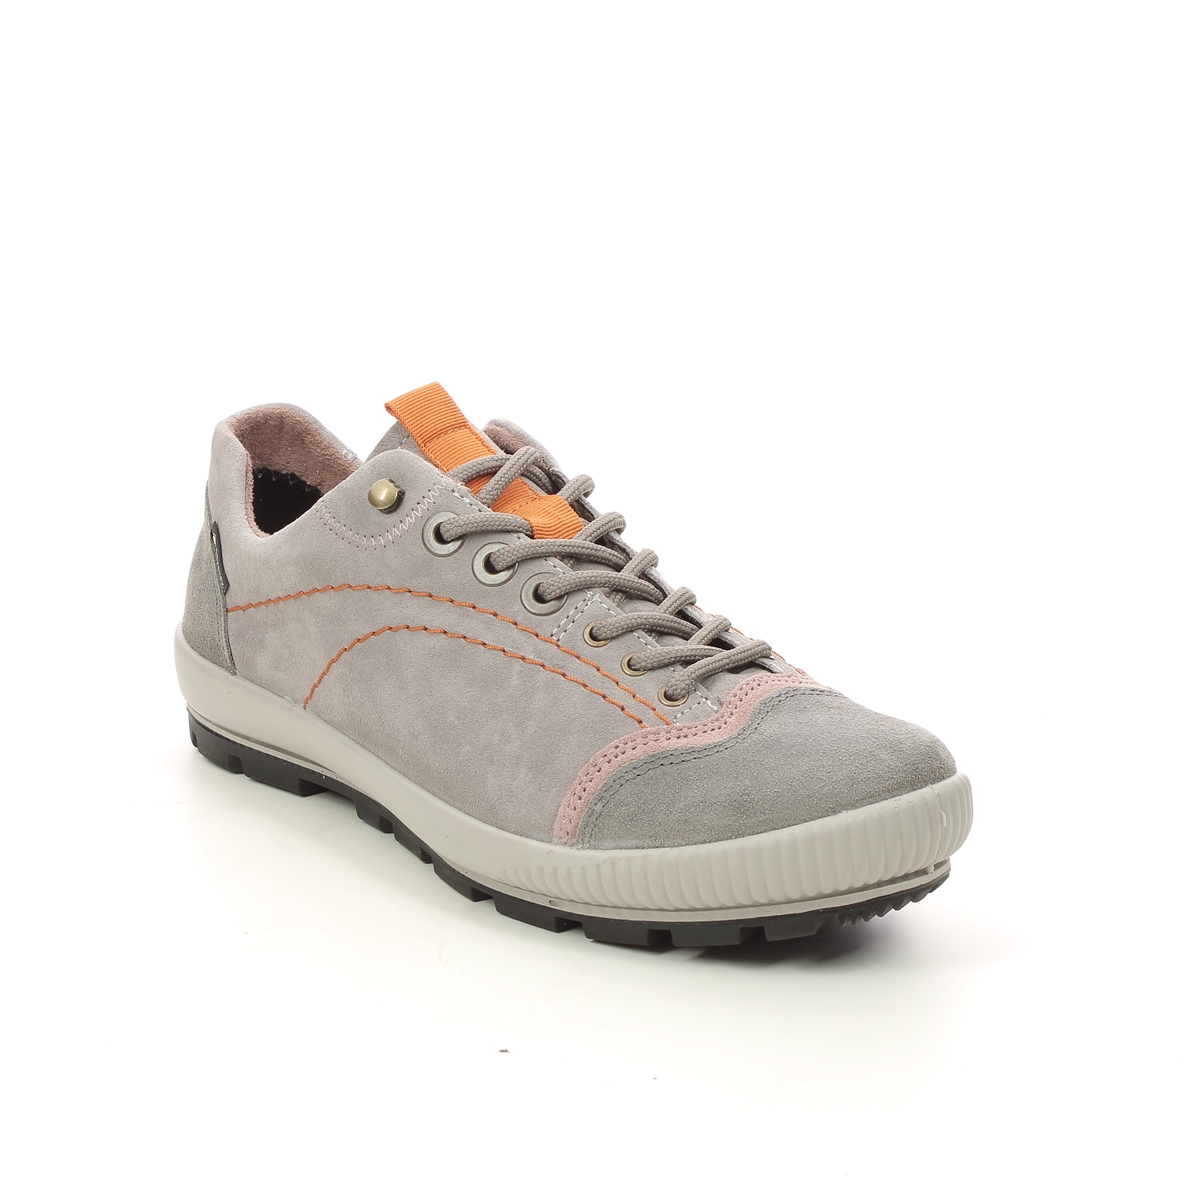 Legero Tanaro Trek Gtx LIGHT GREY SUEDE Womens Walking Shoes 2000122-2900 in a Plain Leather in Size 7